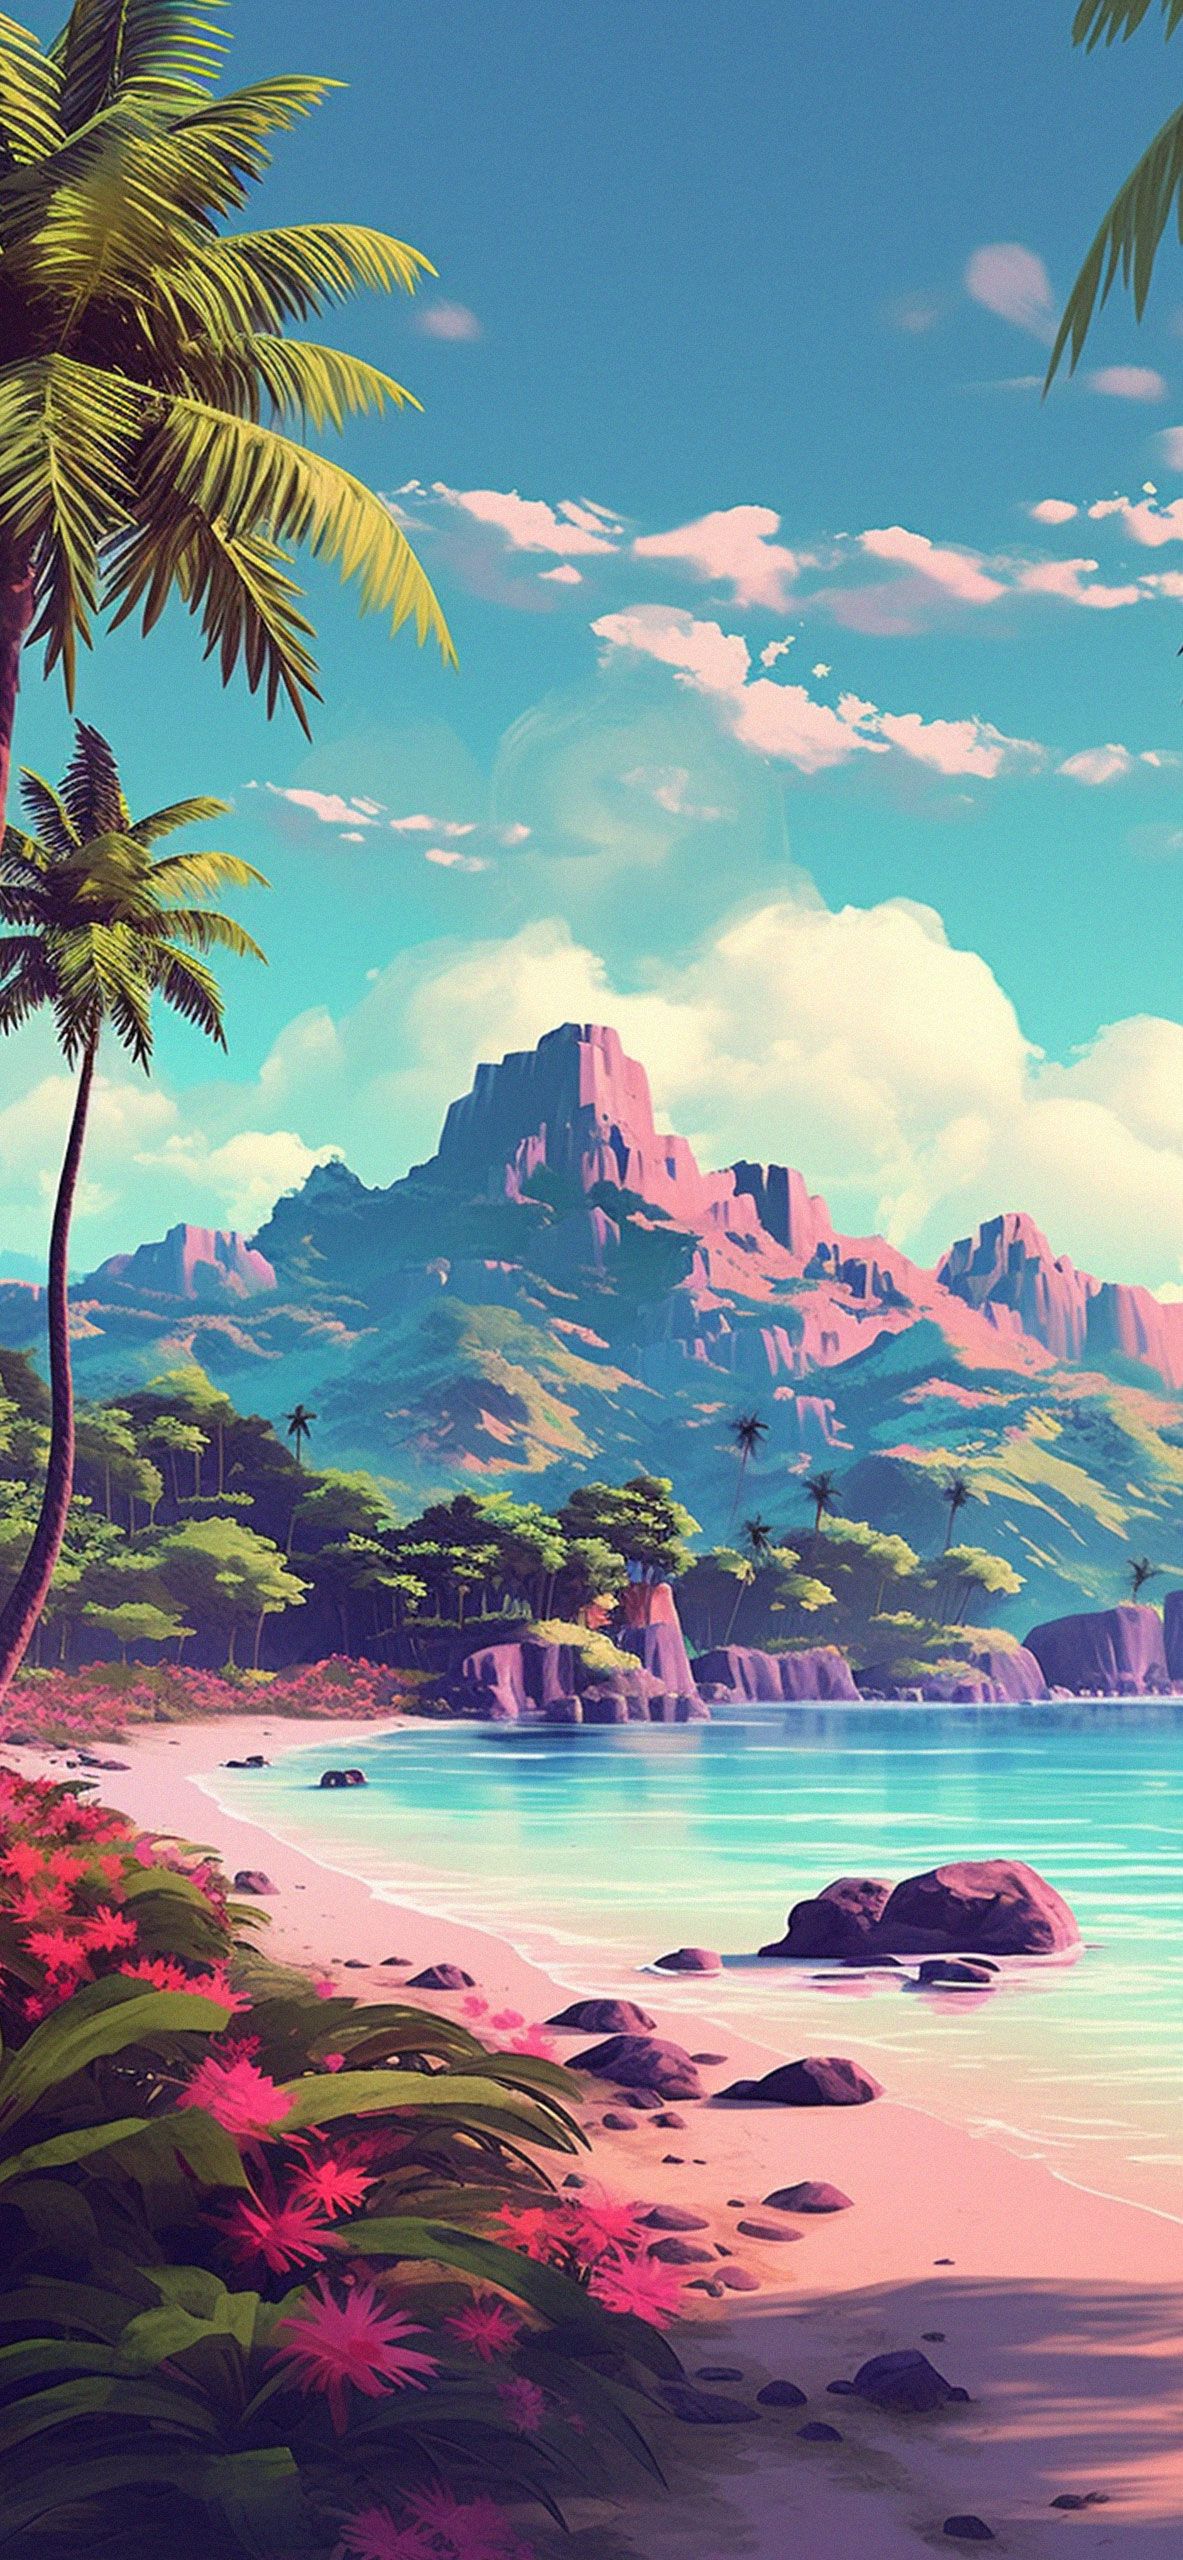 Hawaii Beach & Mountains Wallpaper